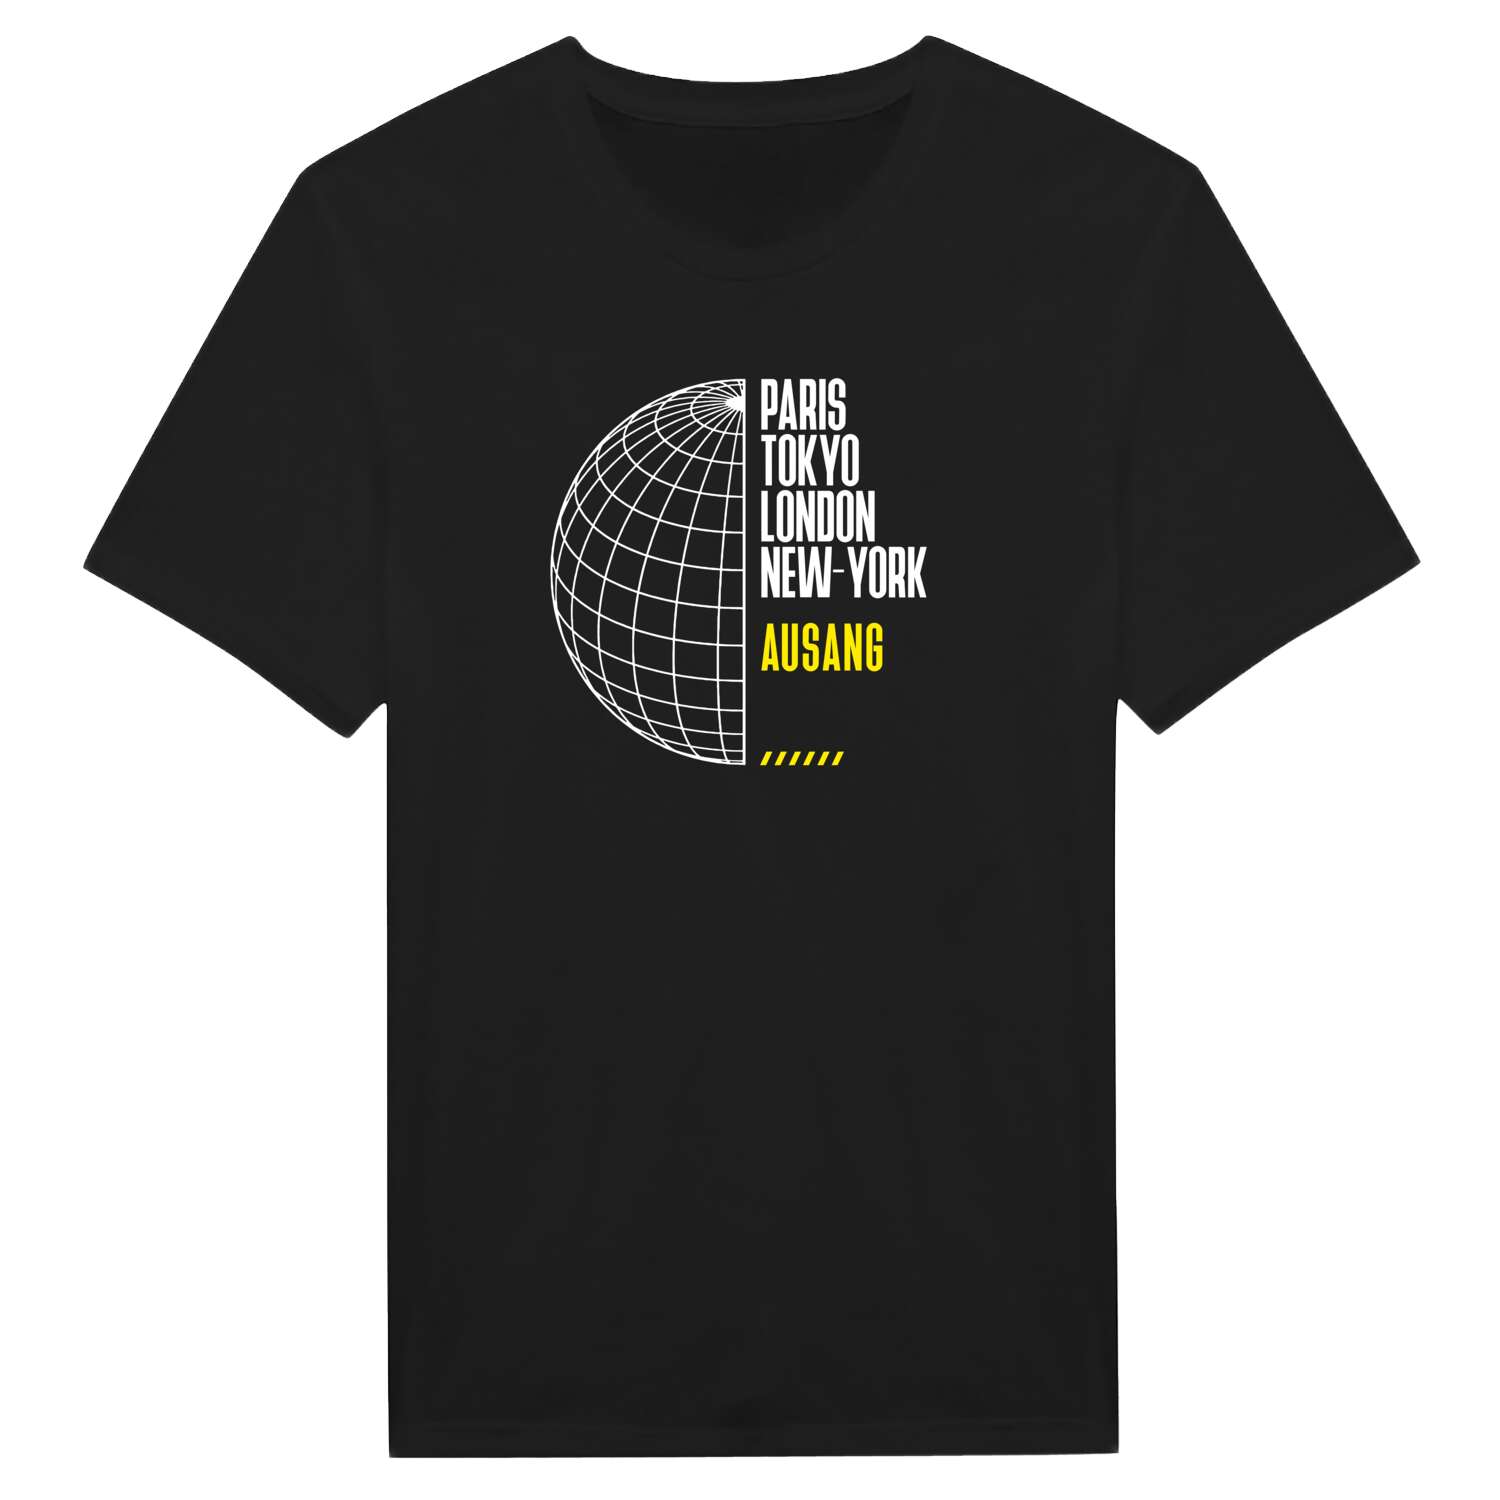 Ausang T-Shirt »Paris Tokyo London«